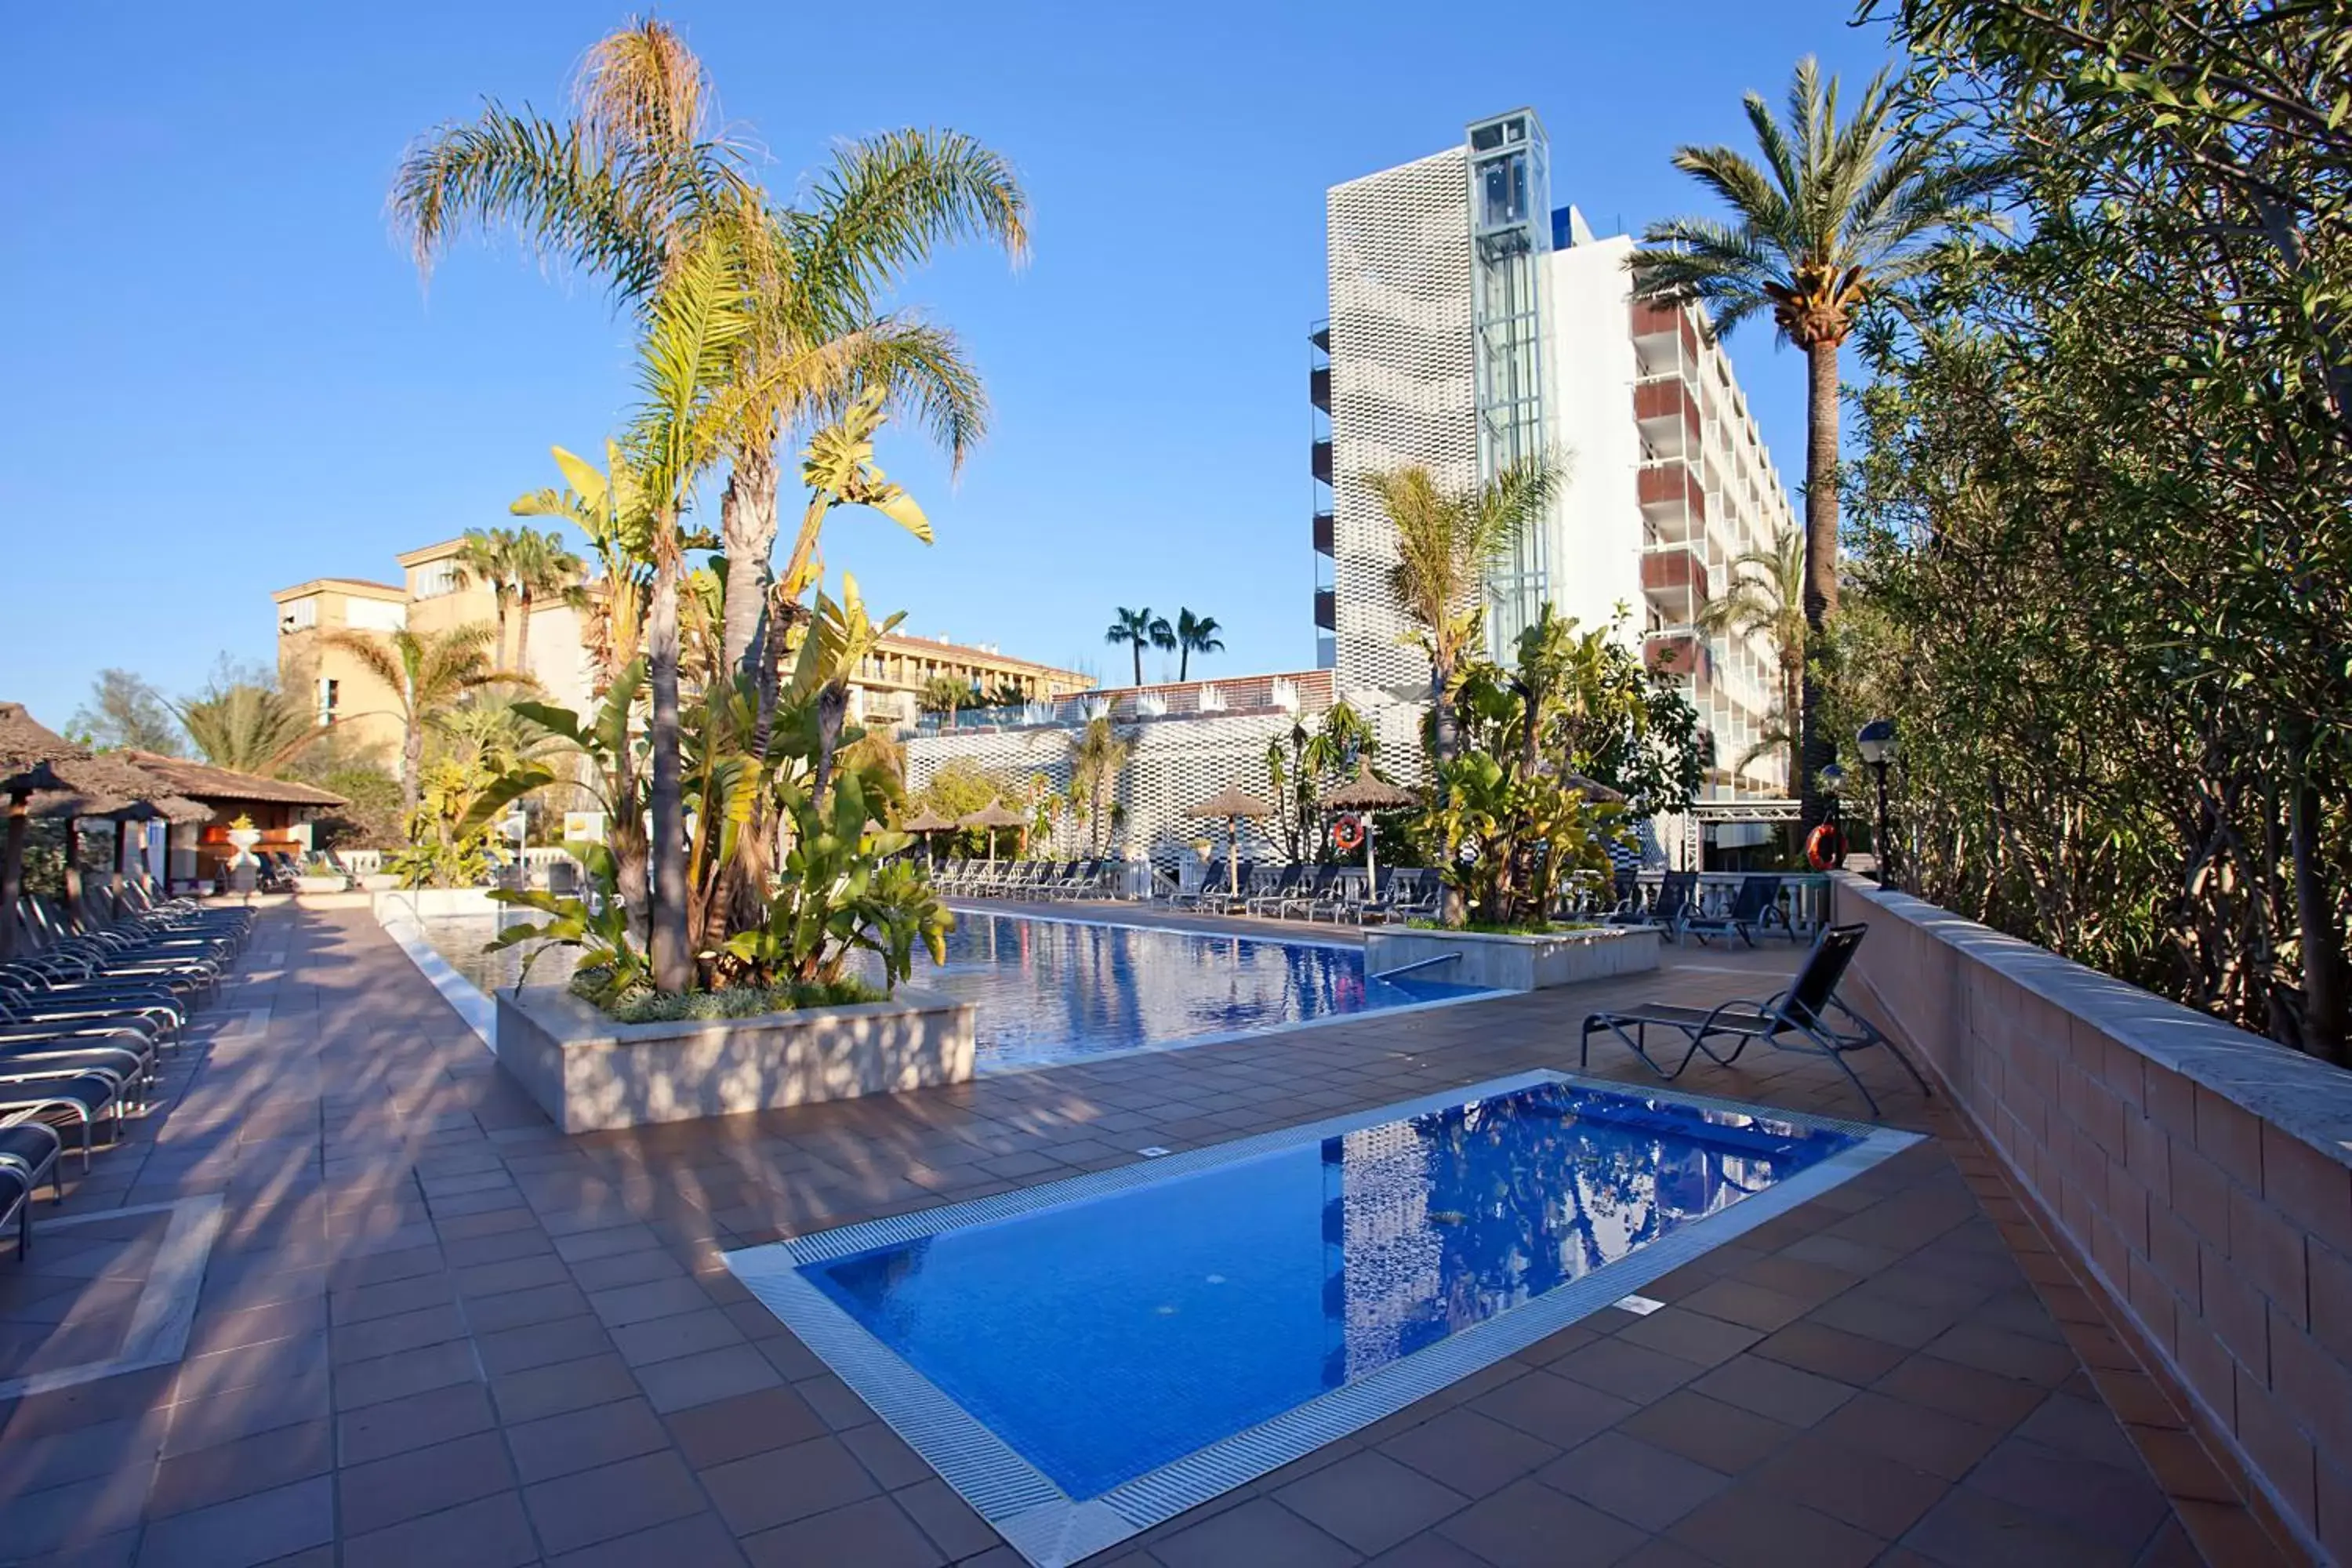 Property building, Swimming Pool in Bahía de Alcudia Hotel & Spa